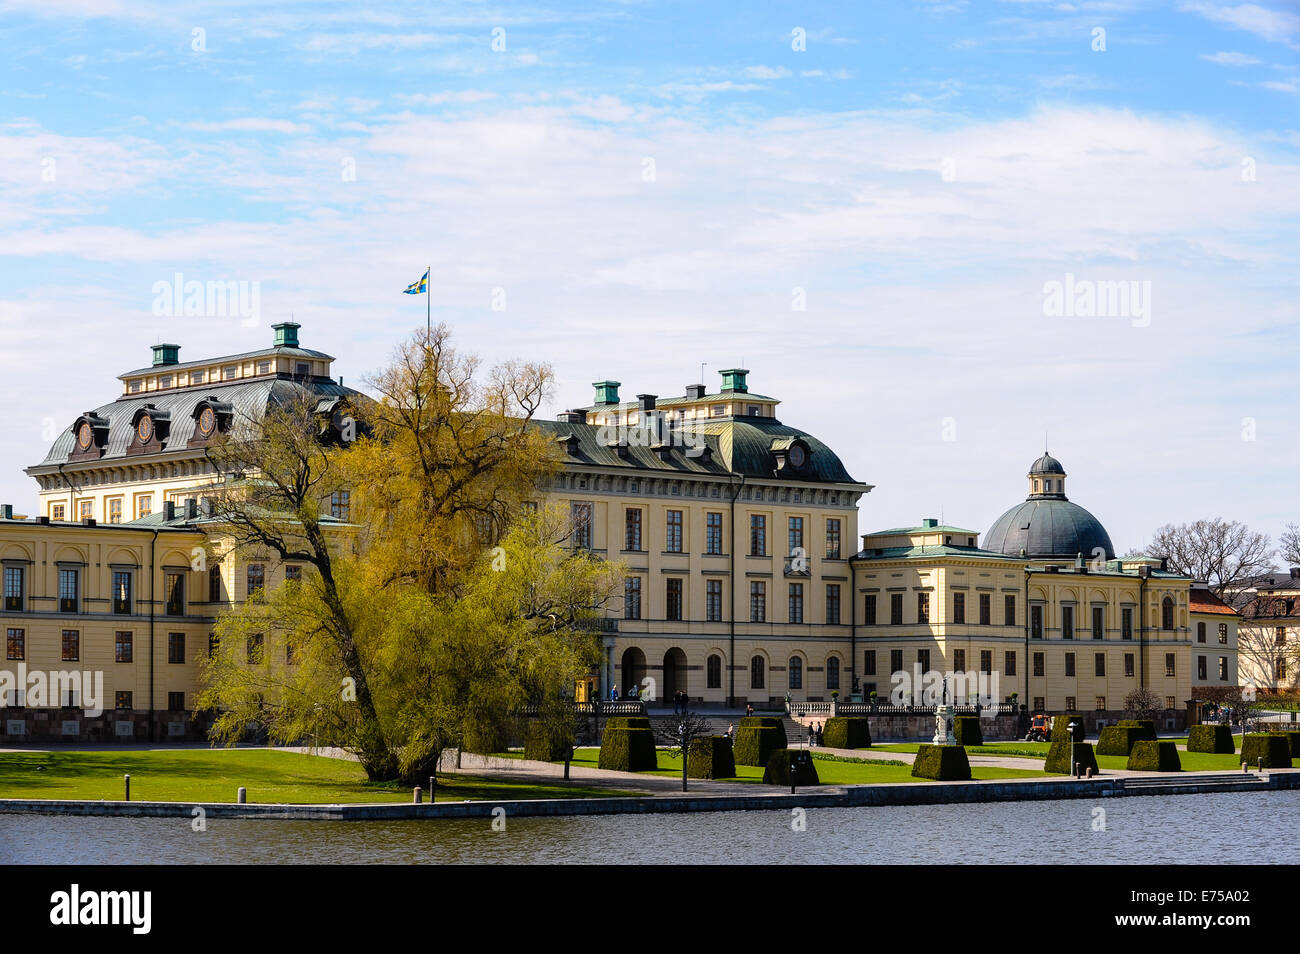 Sweden, Ekerö. The Drottningholm Palace (Drottningholms slott). Stock Photo